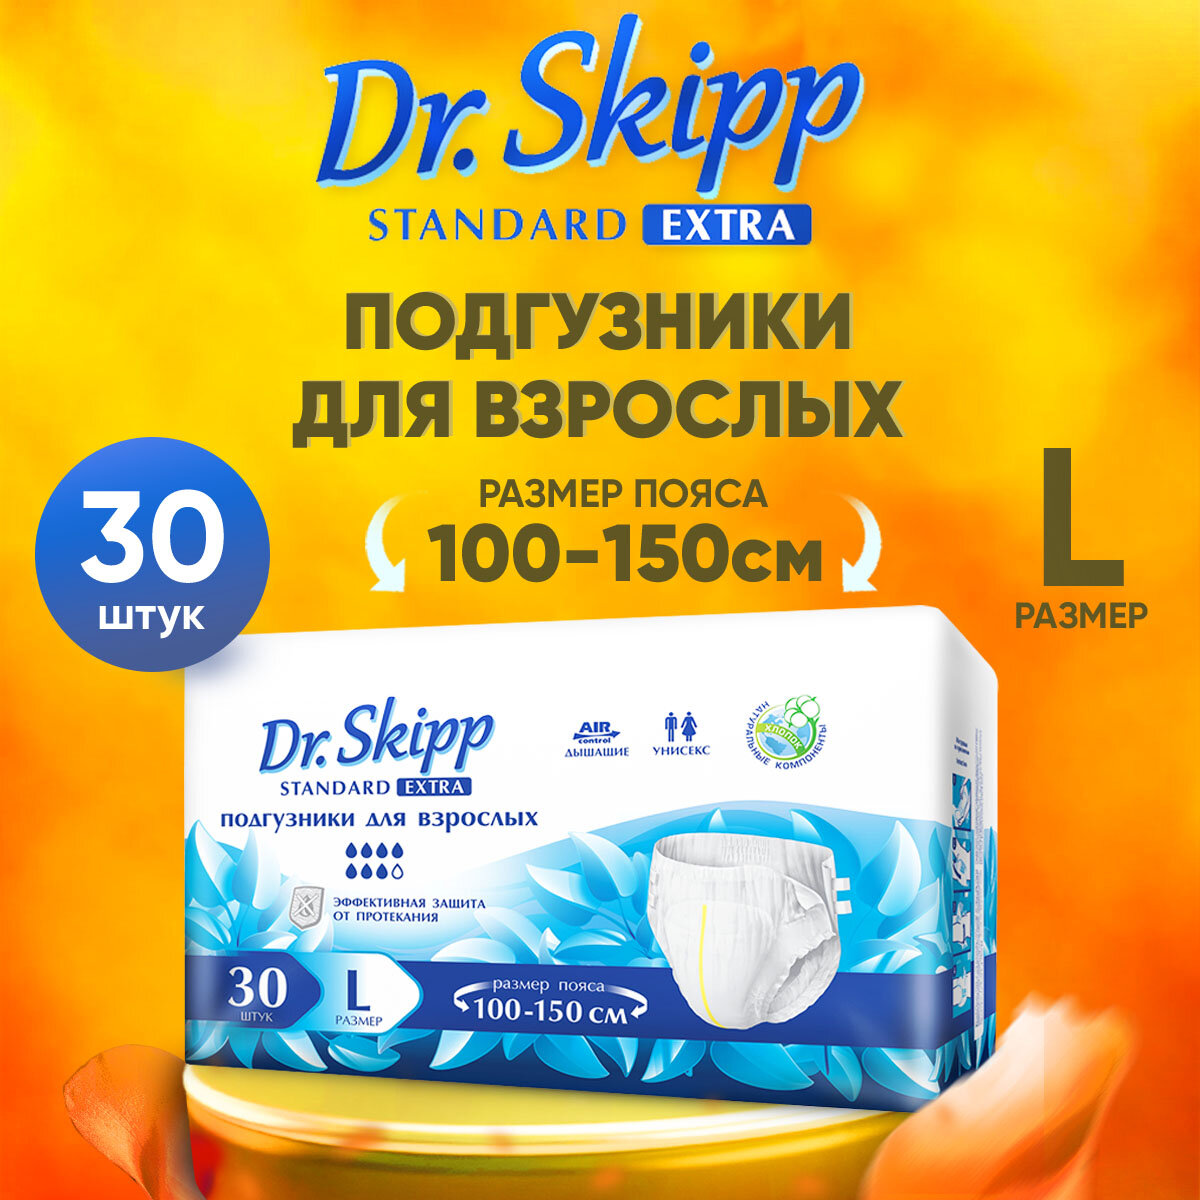 Подгузники для взрослых Dr.Skipp Standard Extra, L (100-150), 30шт, 8132